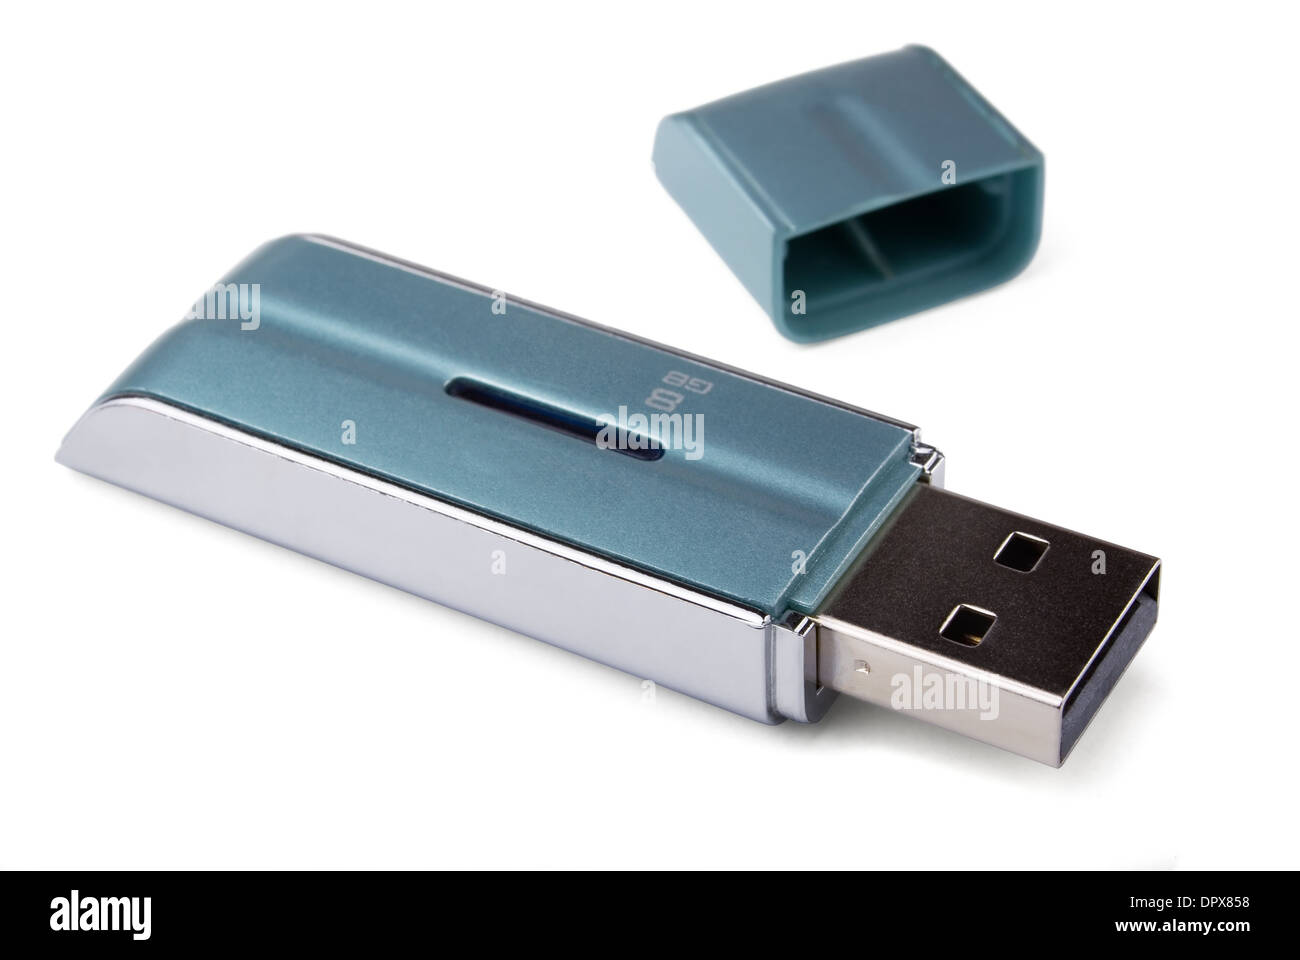 USB flash memory stick isolated on white Stock Photo